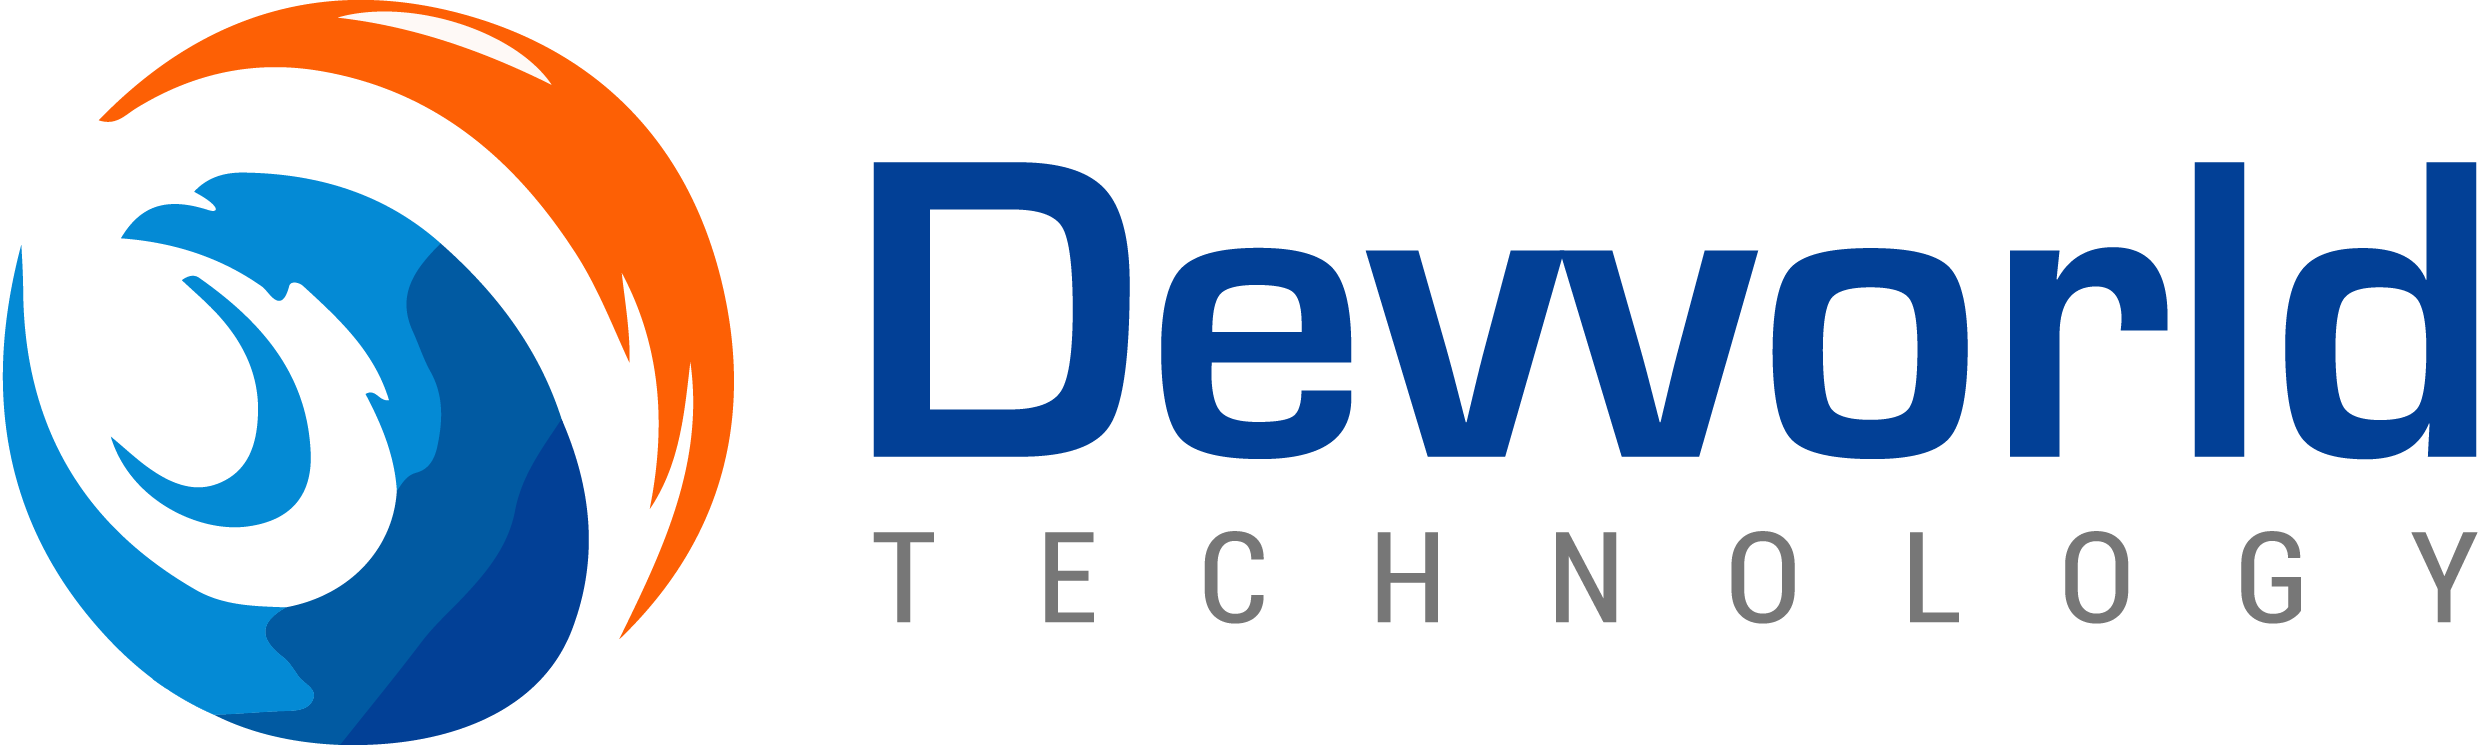 devvorld technology Web Design (UI/UX) India